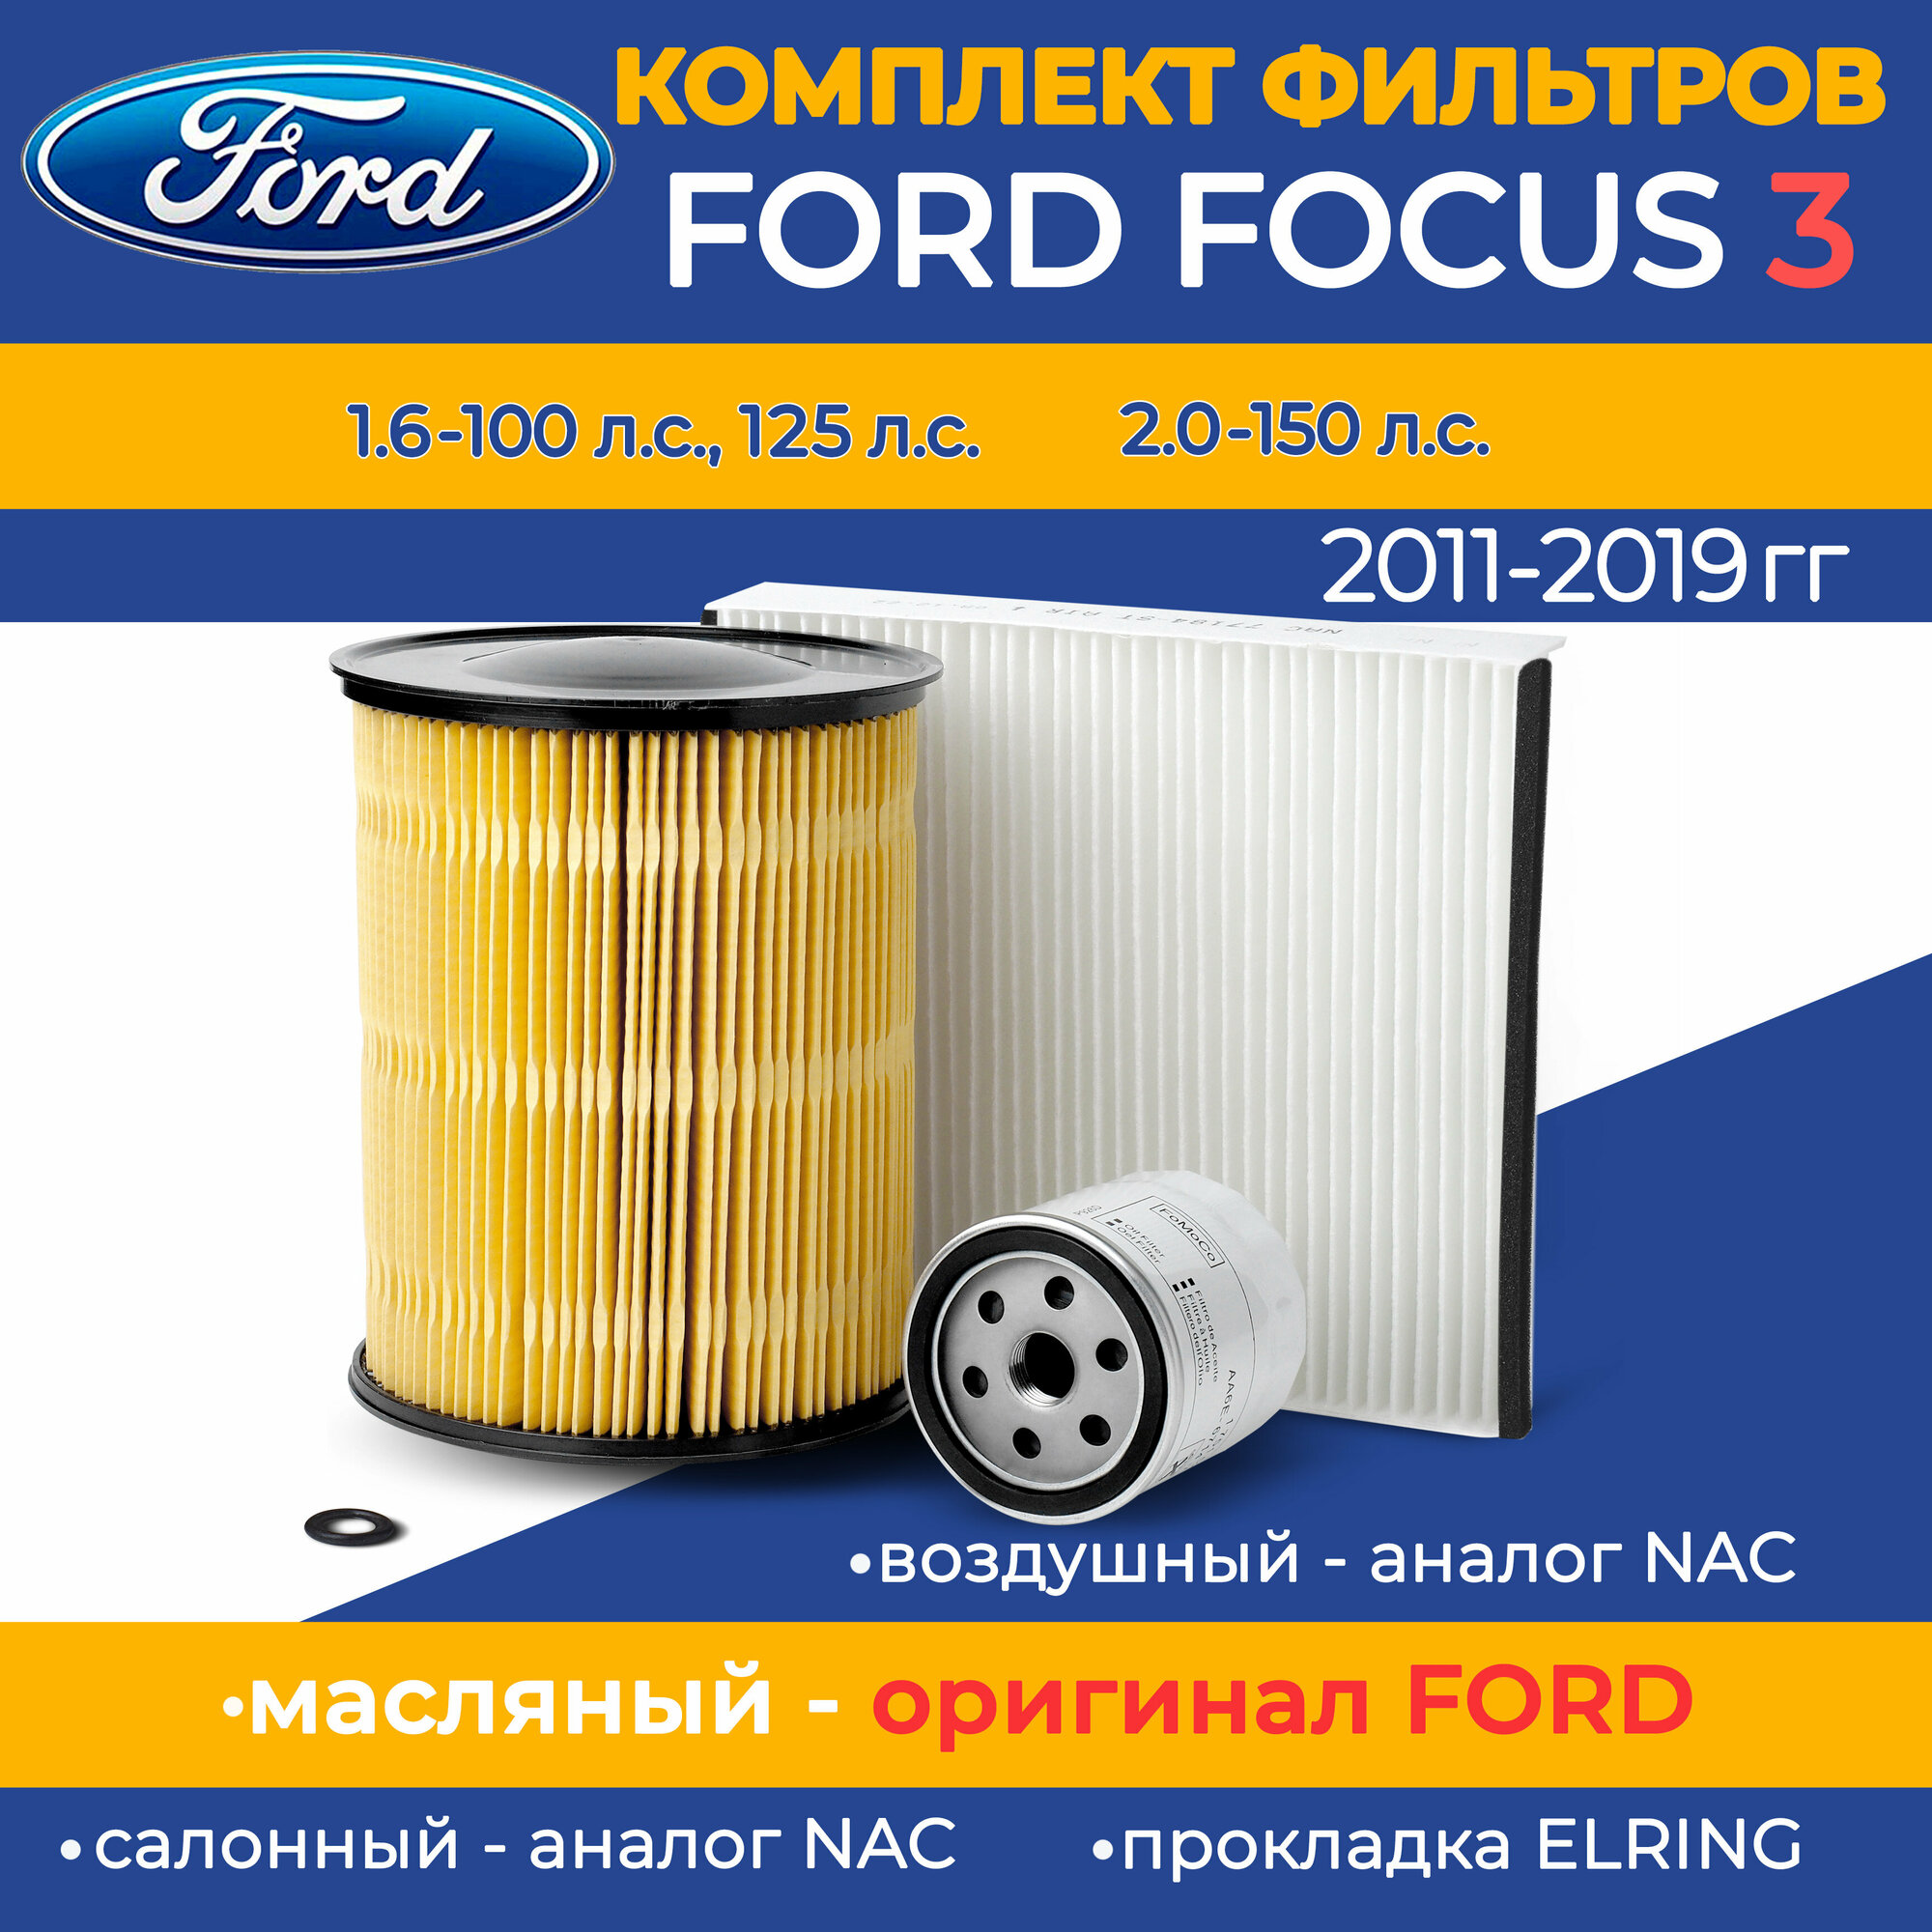 Комплект фильтров Ford Focus III (масляный оригинал, воздушный круглый (аналог), салонный (аналог)) / набор ТО Форд Фокус 3